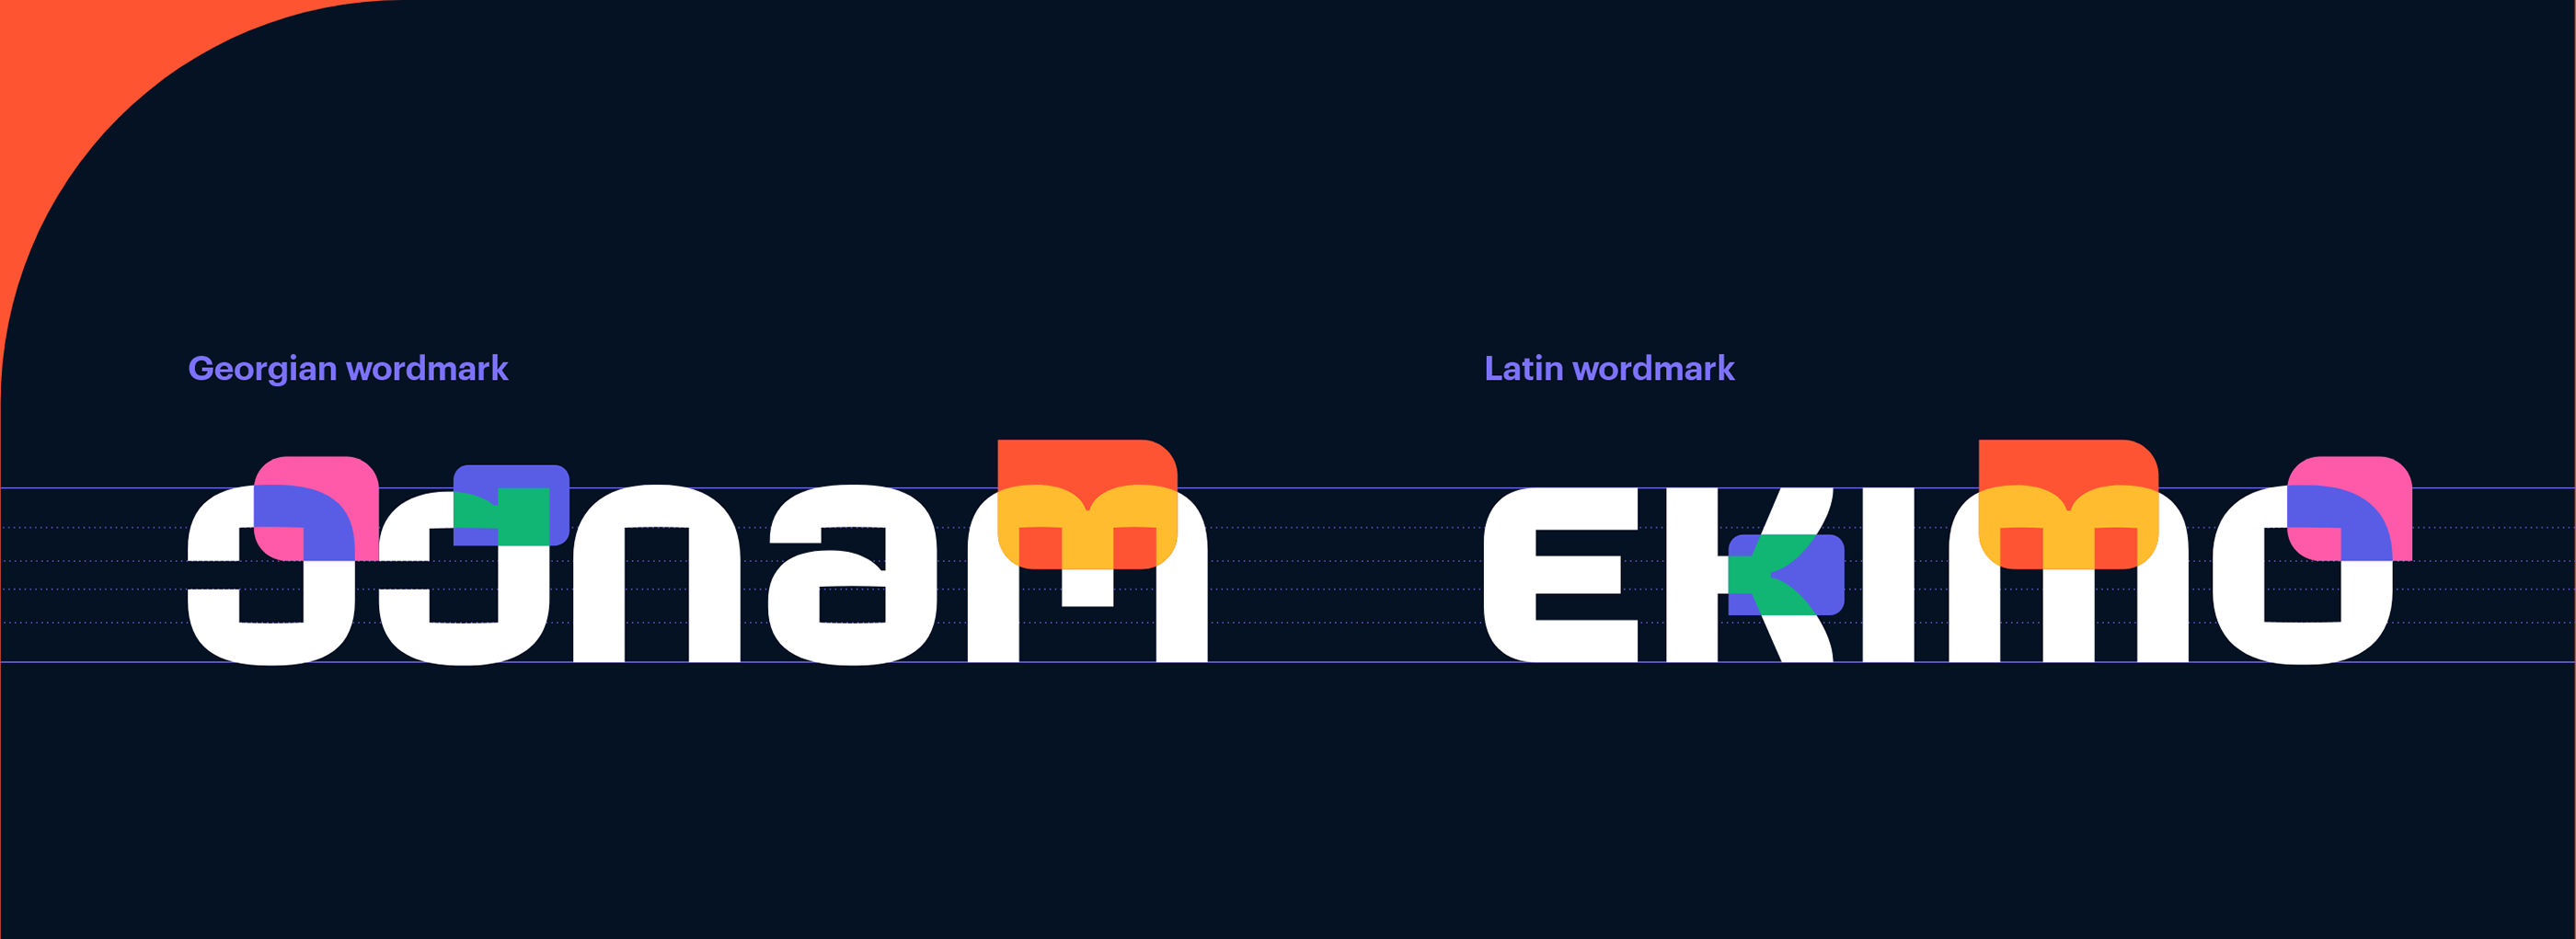 EKIMO - Rebranded Identity